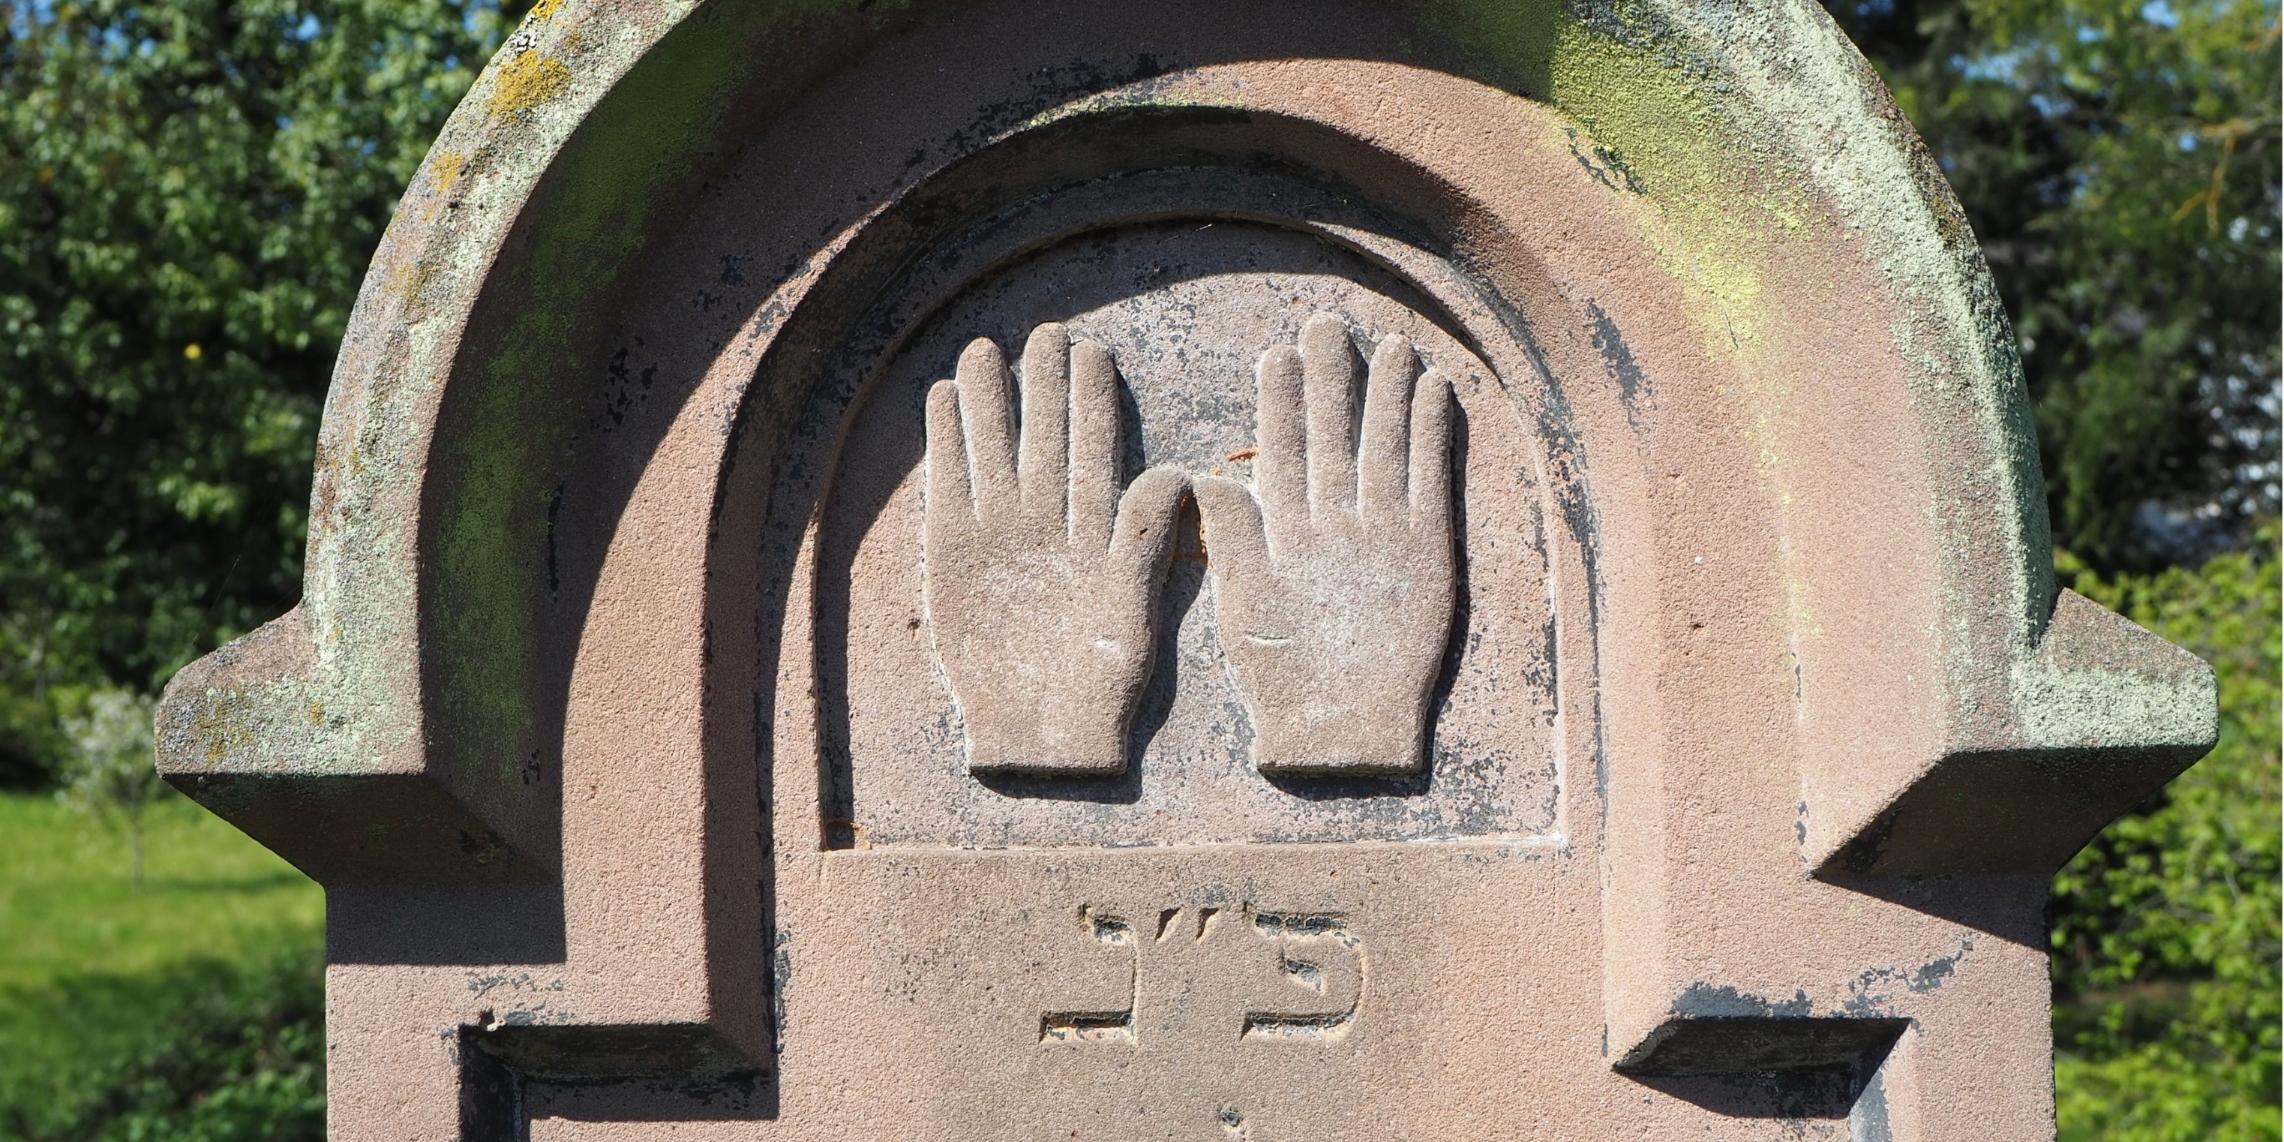 Segnende Hände auf einem Grabstein auf dem jüdischen Friedhof in Schweich